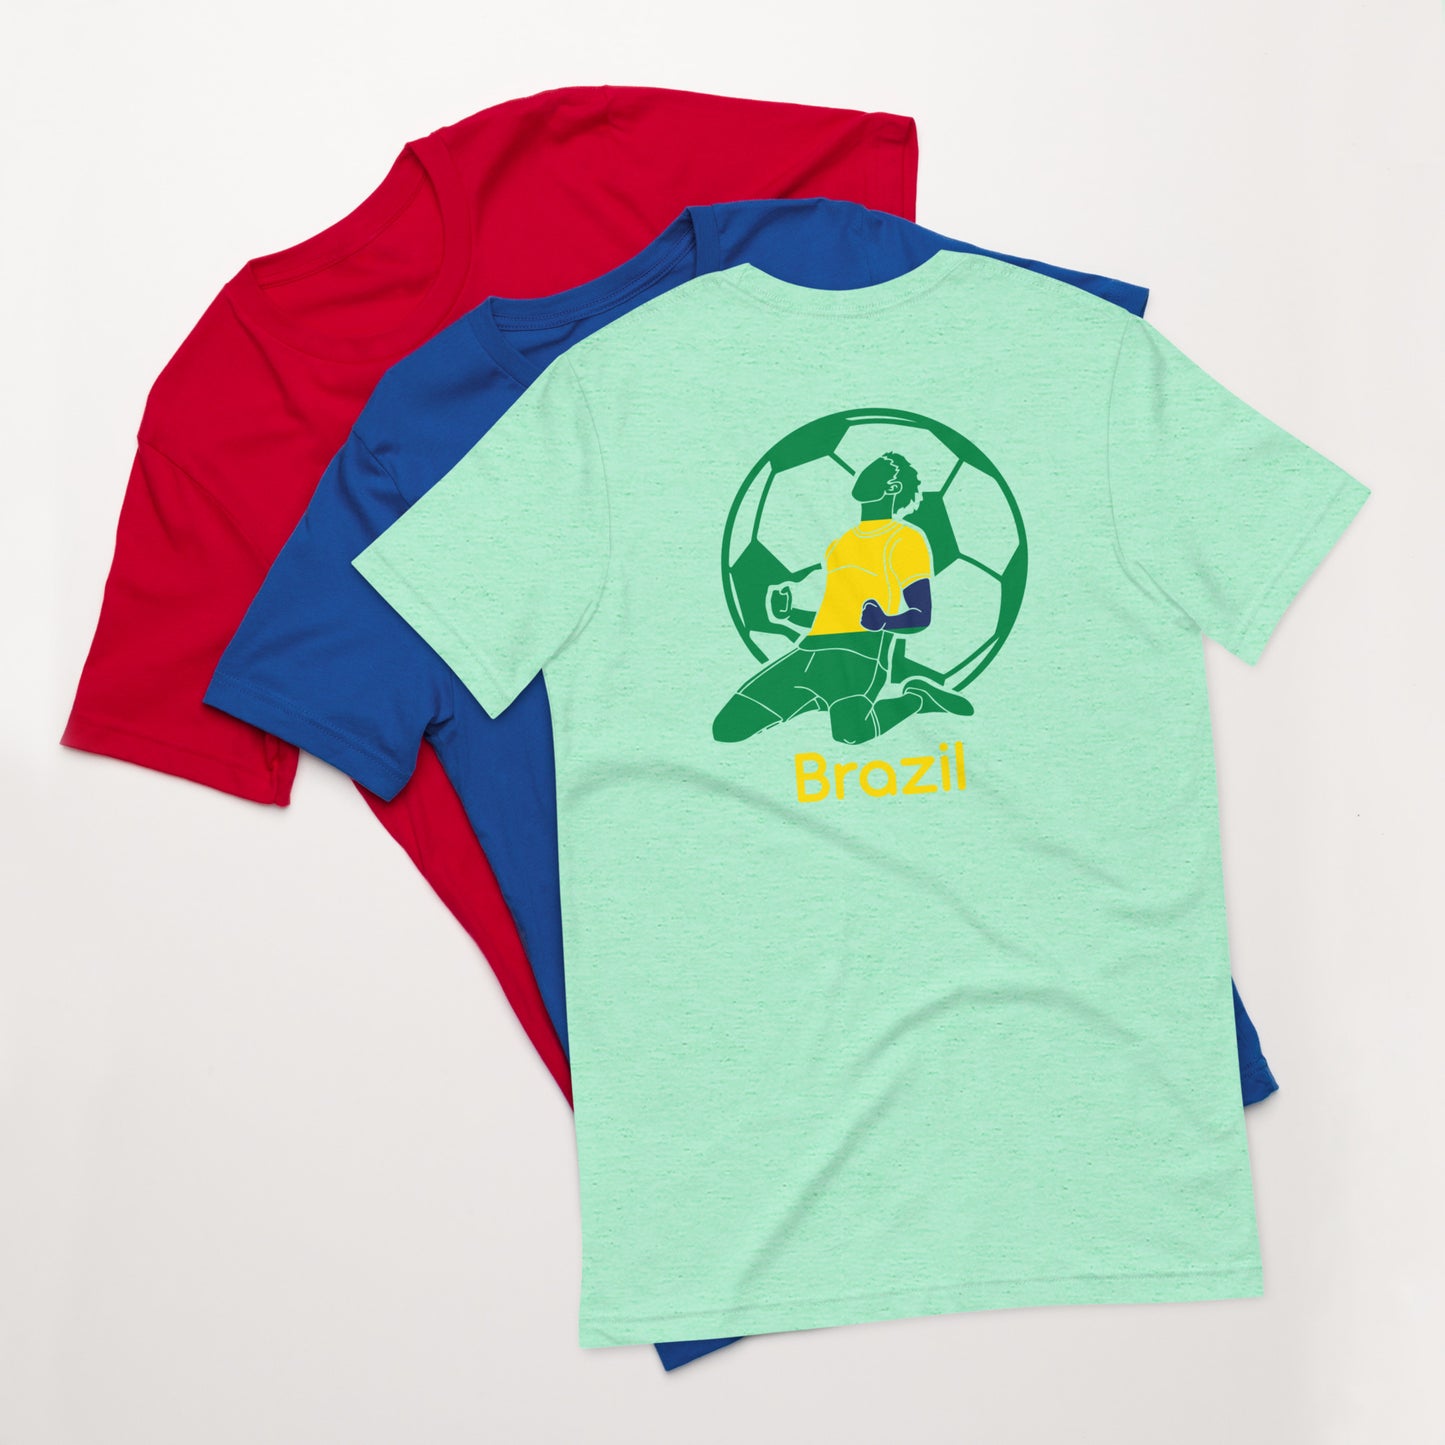 Sweet Science Sports Brazil Futbol  t-shirt